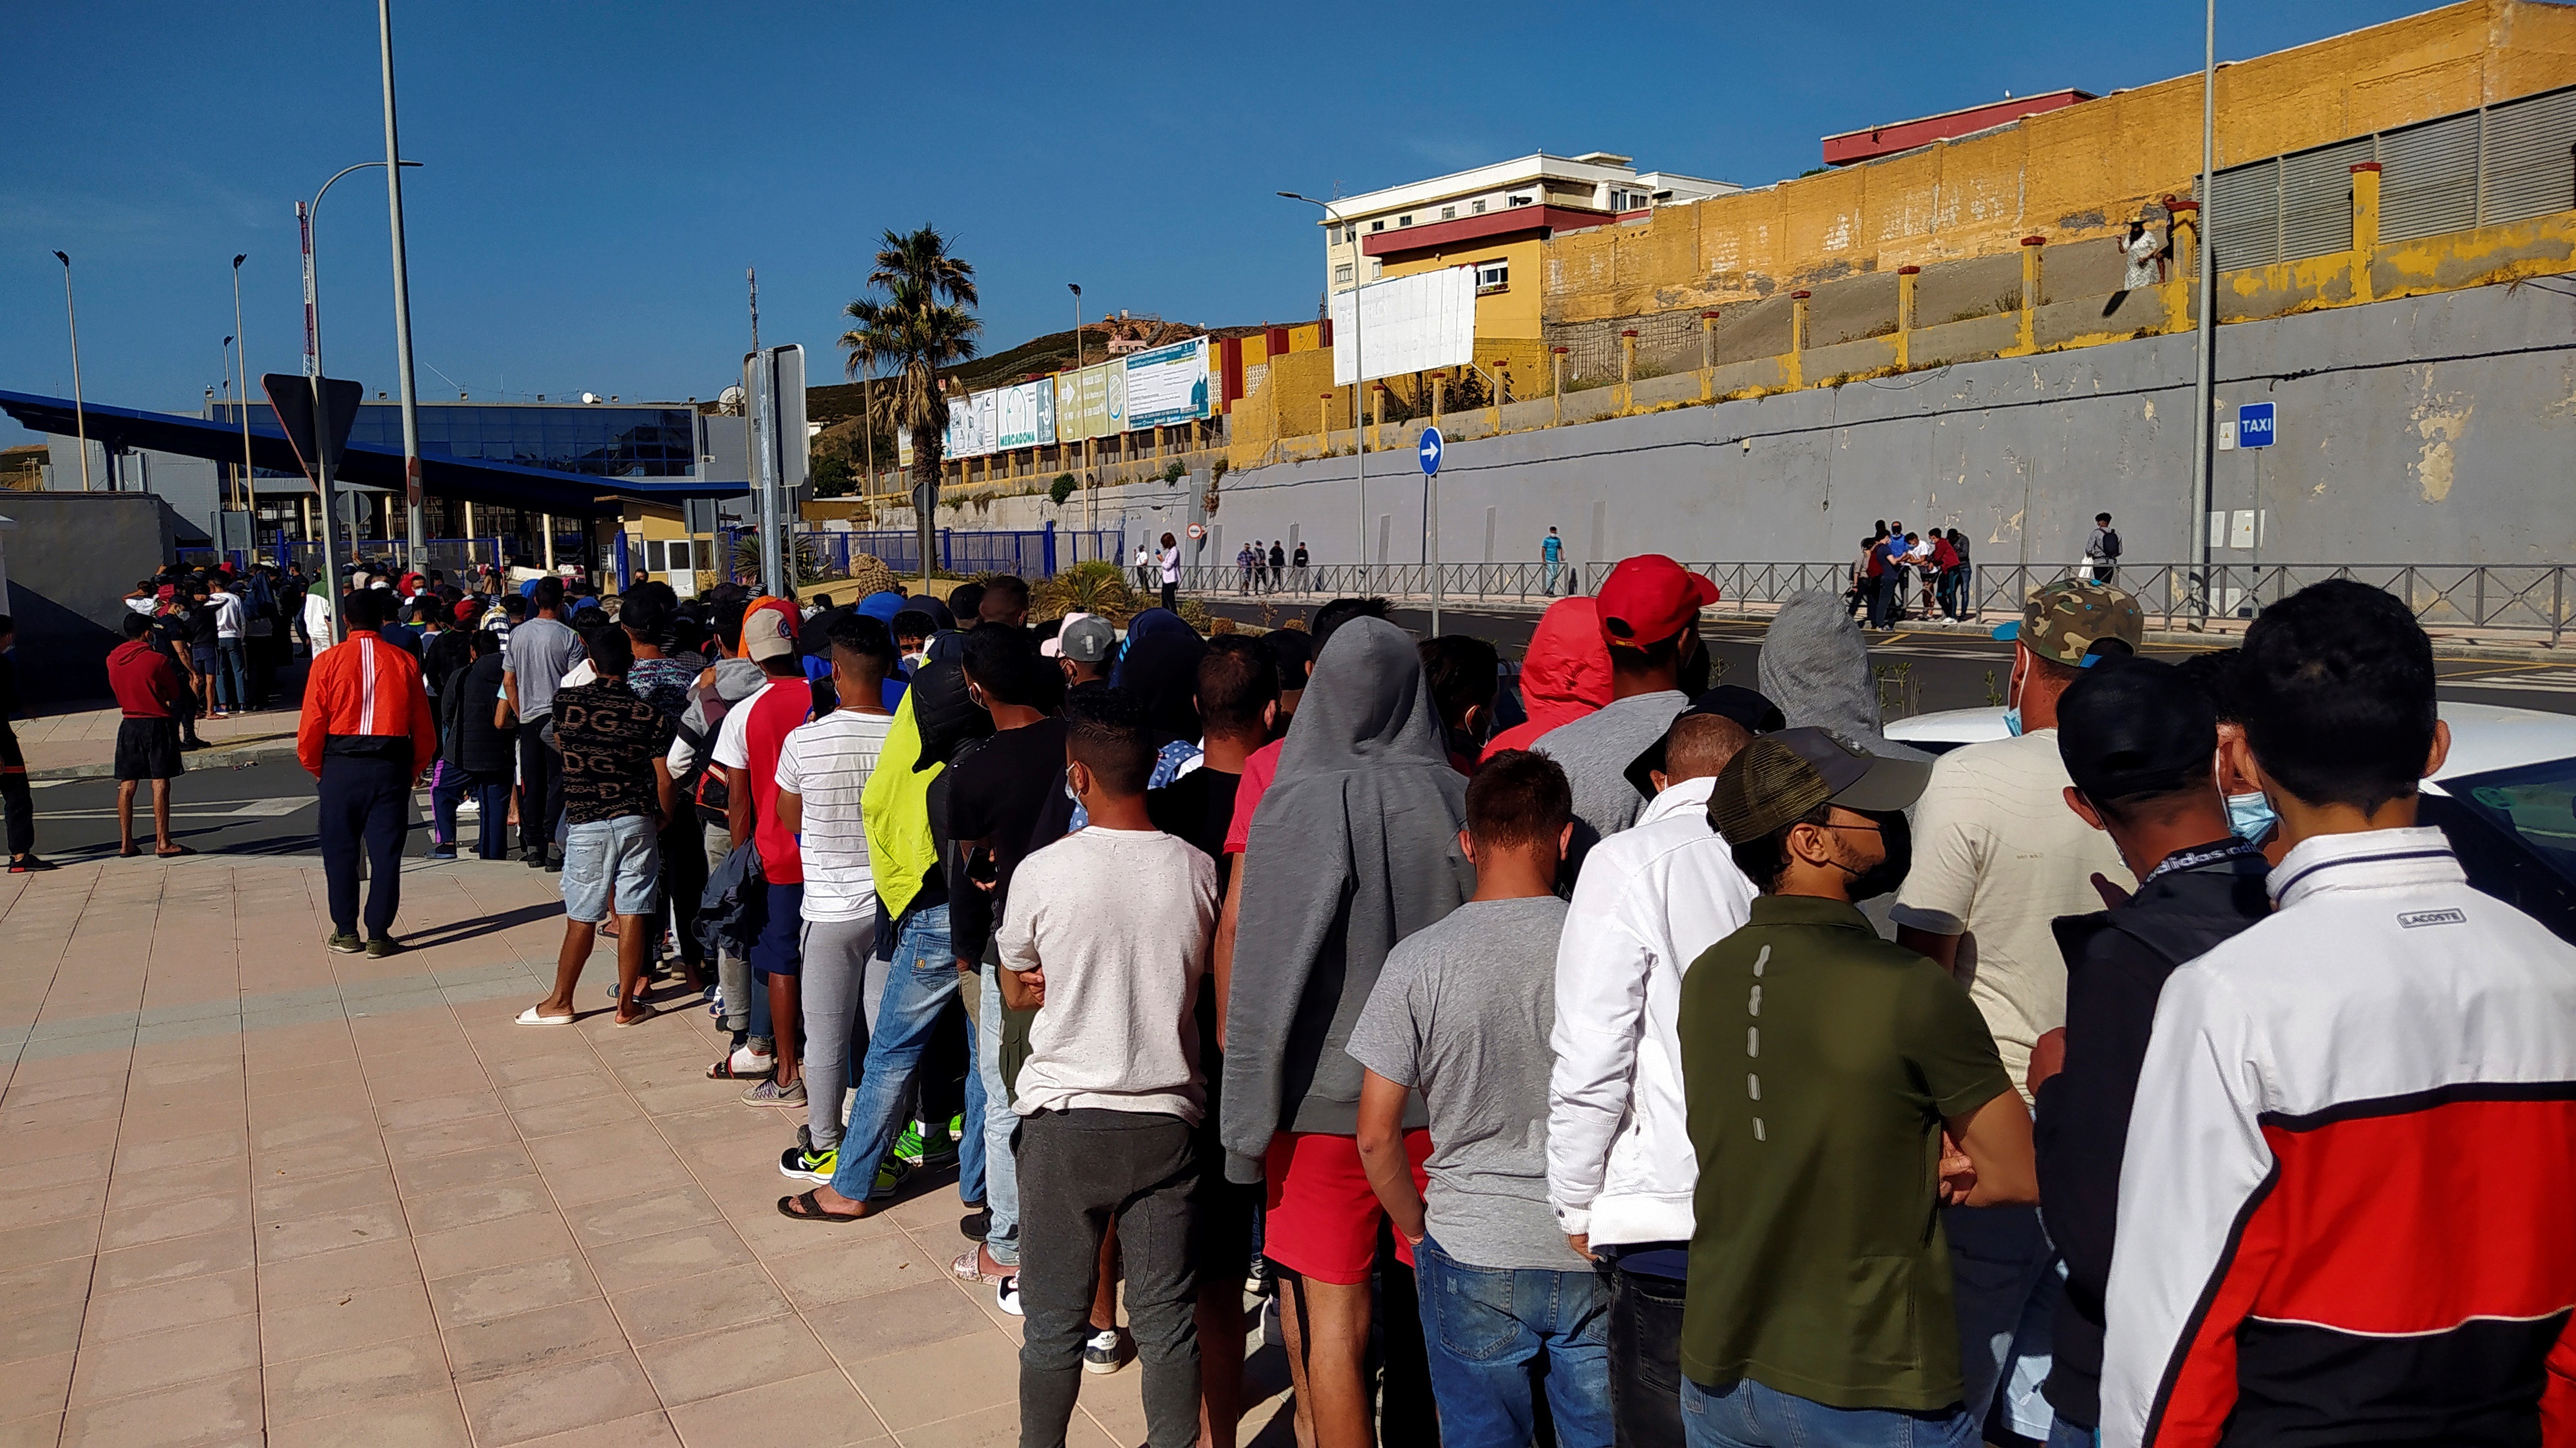 Un correo a Ceuta prueba que Marlaska ordenó el retorno de los menores: "Se insta se proceda hoy"